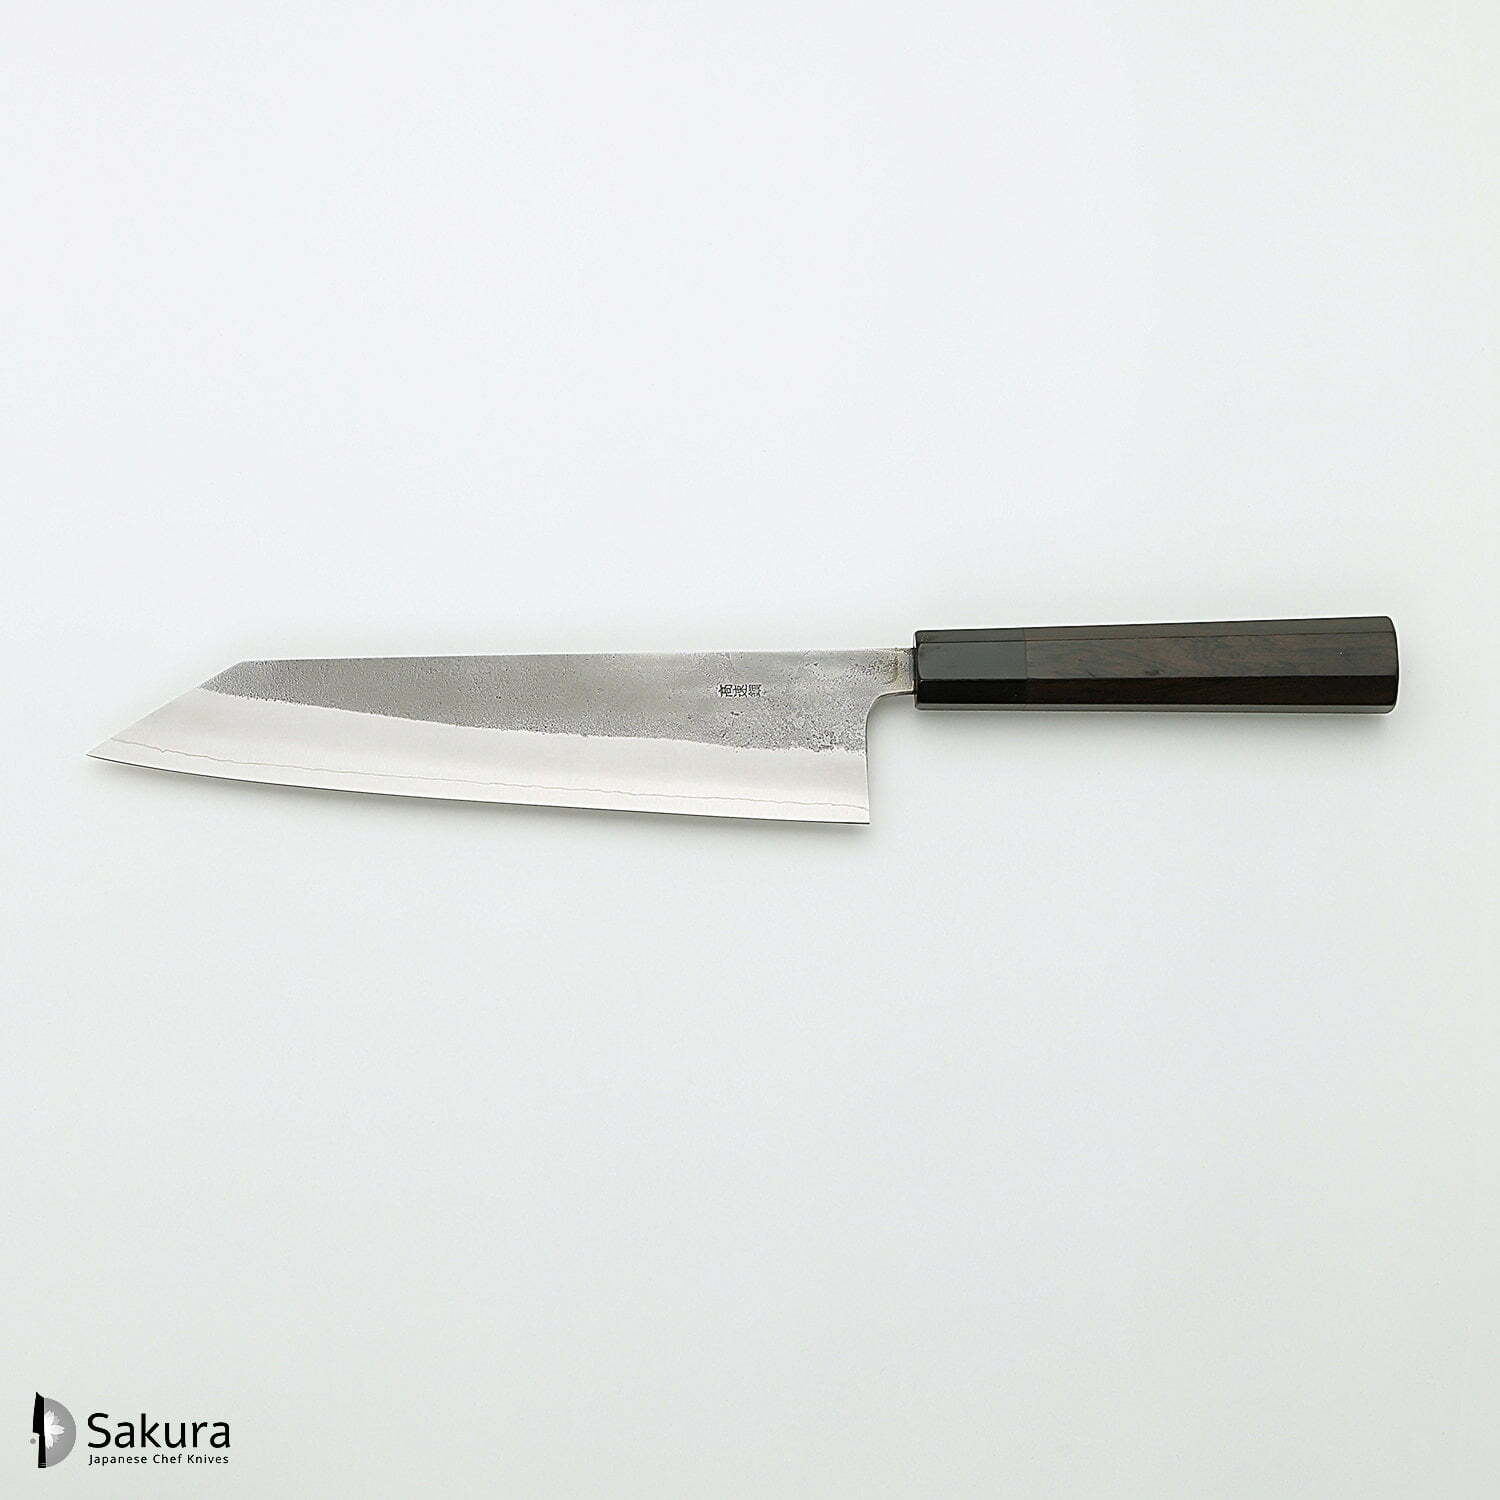 סכין שף רב-תכליתית קִּירִיצוּקֶה גִּיוּטוֹ 240מ״מ מחושלת בעבודת יד 3 שכבות: פלדת פחמן יפנית מתקדמת מסוג SKD עטופה פלדת אל-חלד גימור קורורוצ׳י מט חיספוס טבעי יושיקאנה יפן